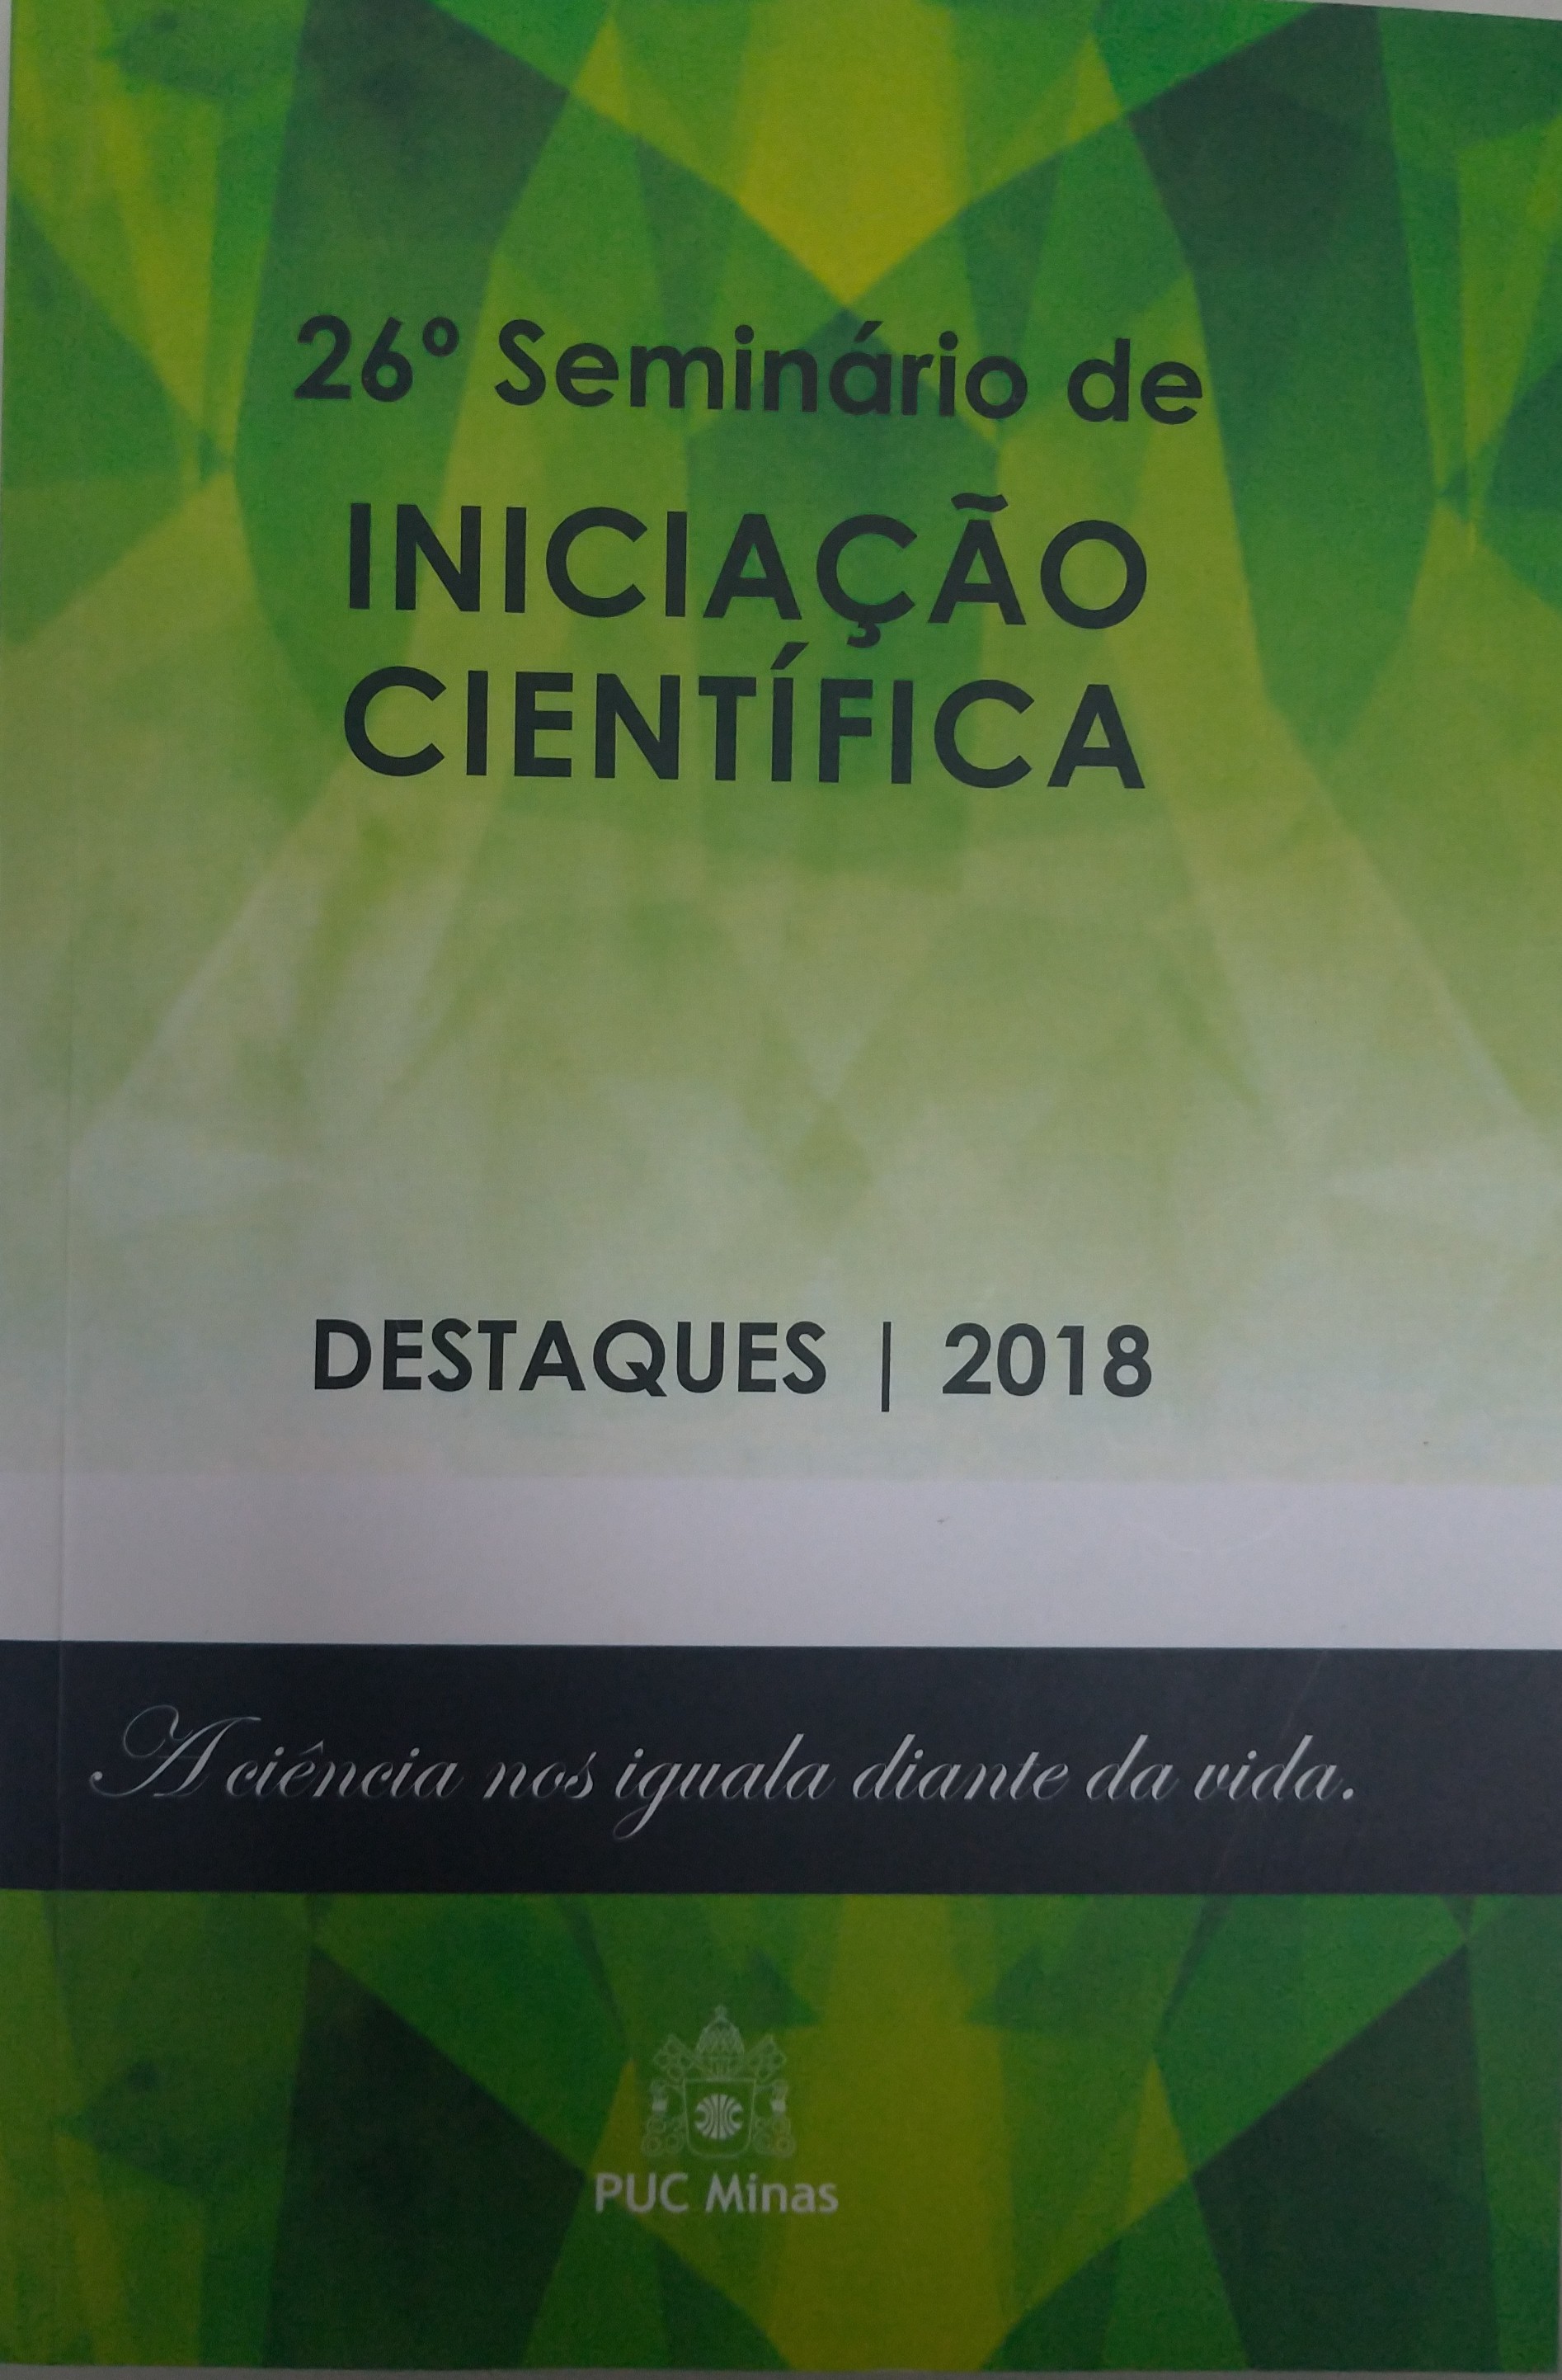 26° Seminário de Iniciação Científica - Destaques 2018